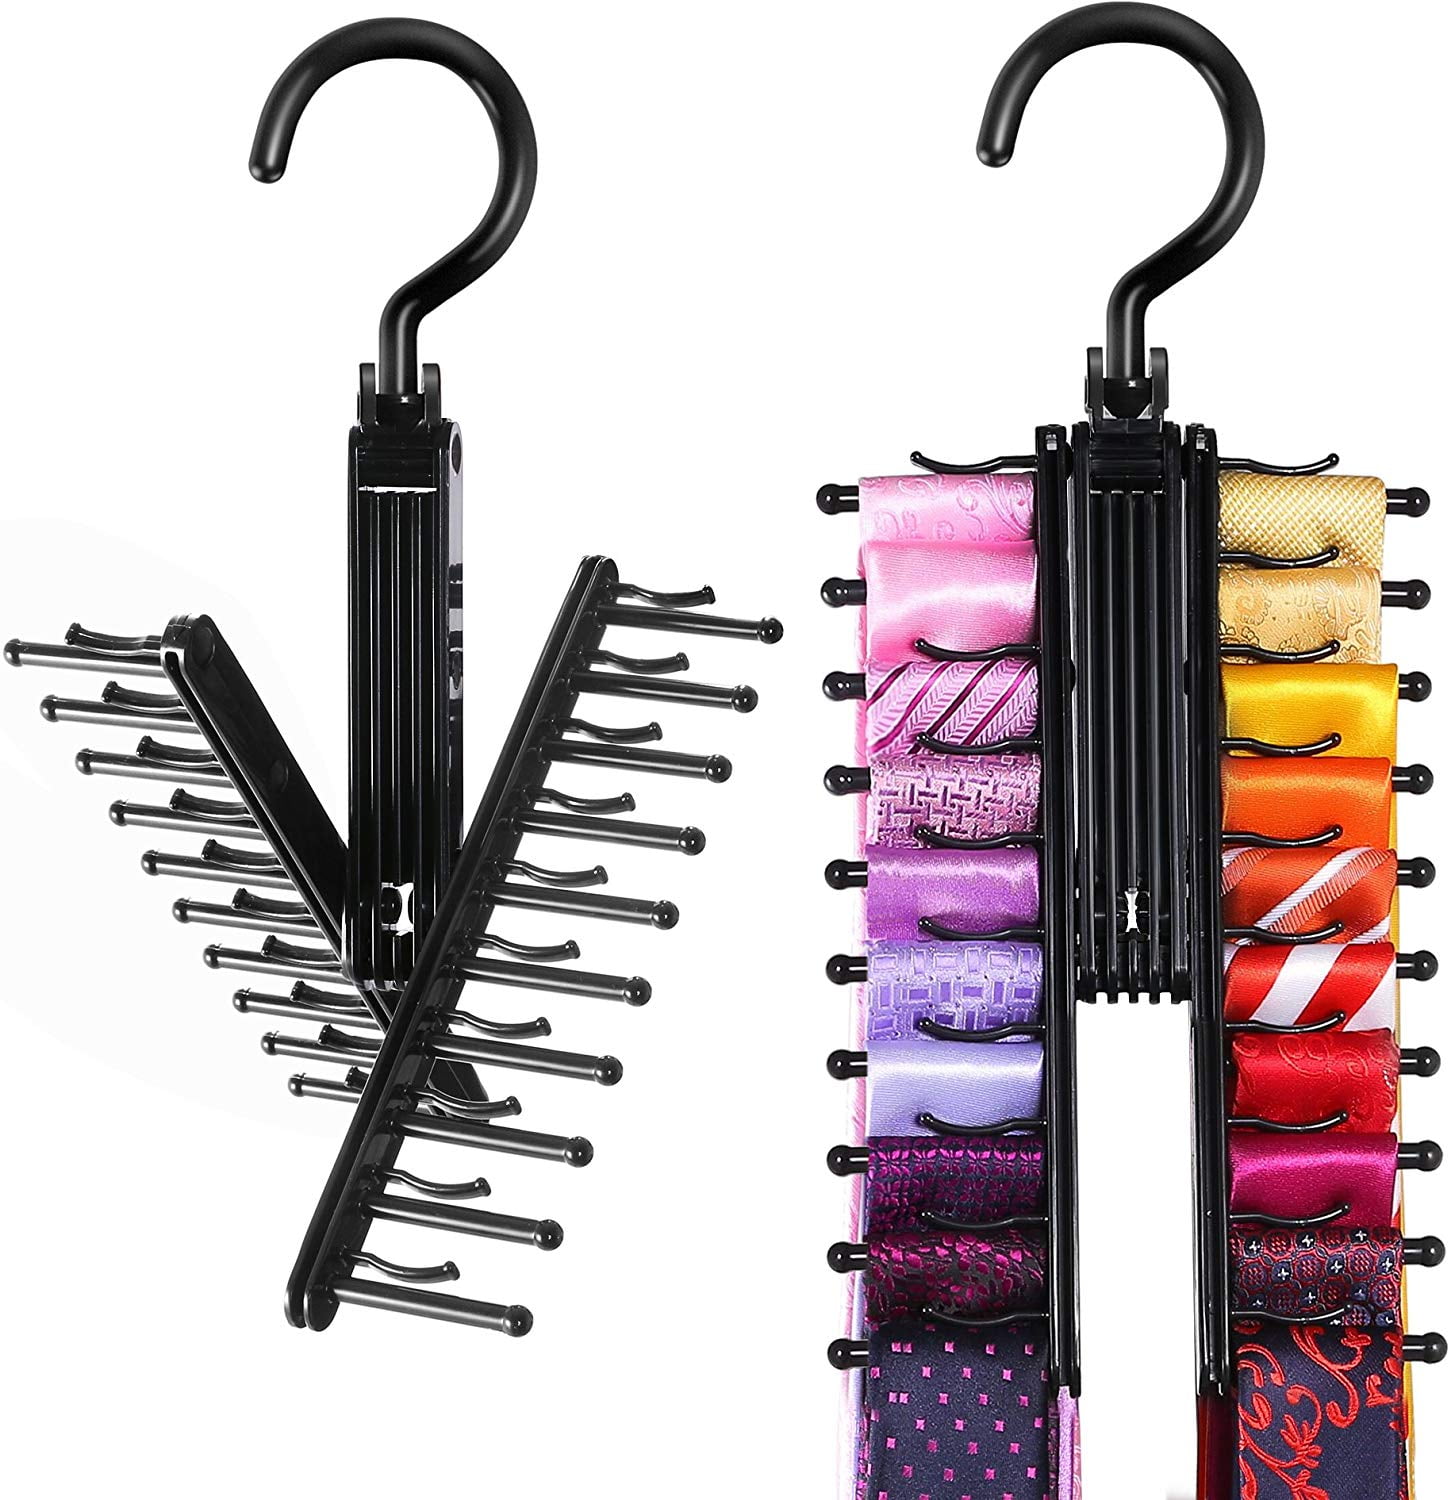 2X Tie Rack Hanger Rotating Adjustable Tie Holds 20 Ties Belts Organiser For Men 